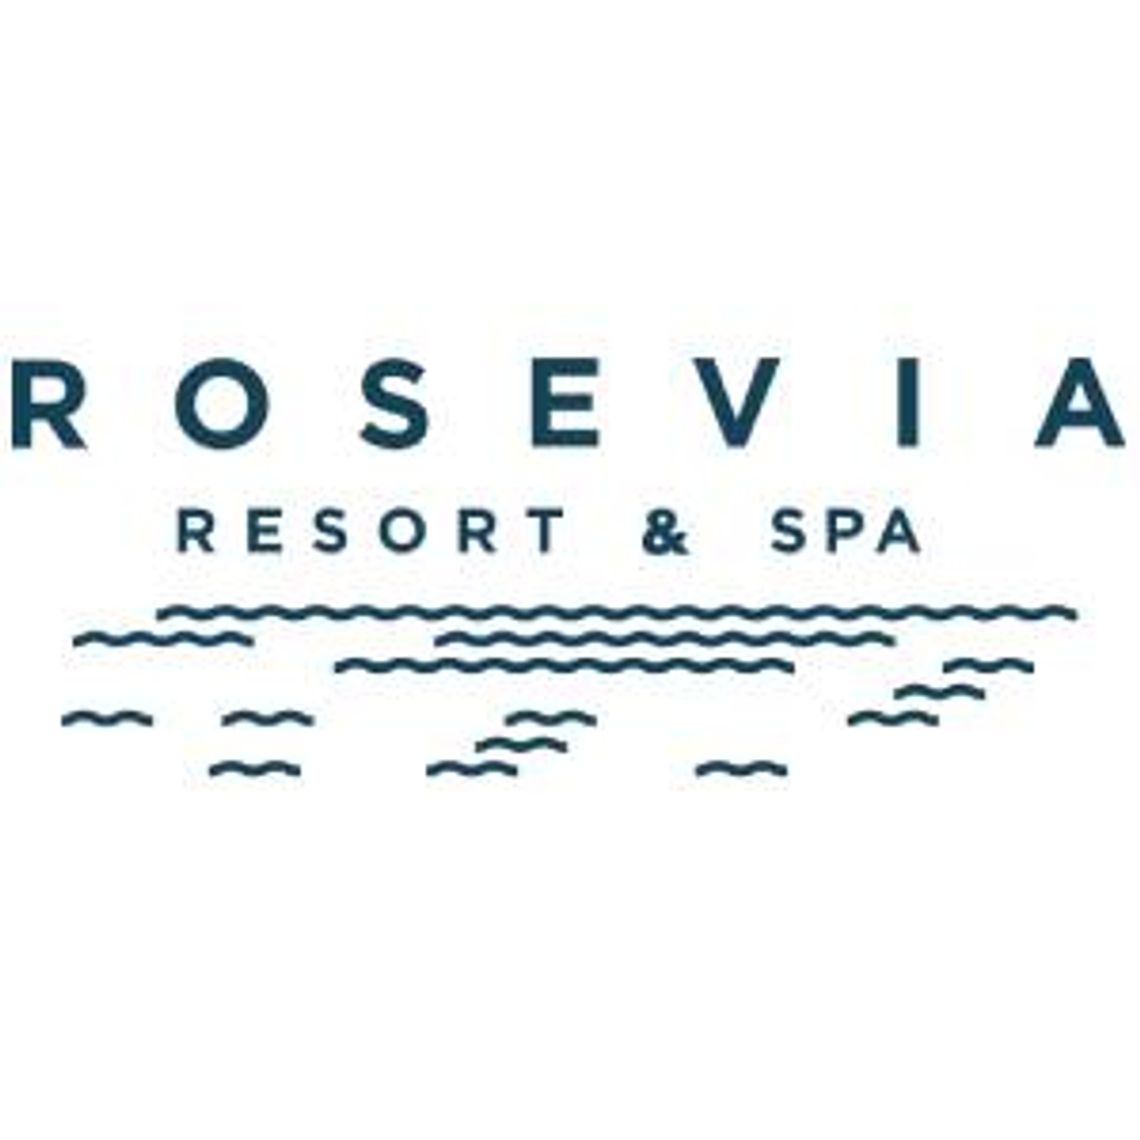 Wesela nad Morzem - Rosevia Resort & Spa